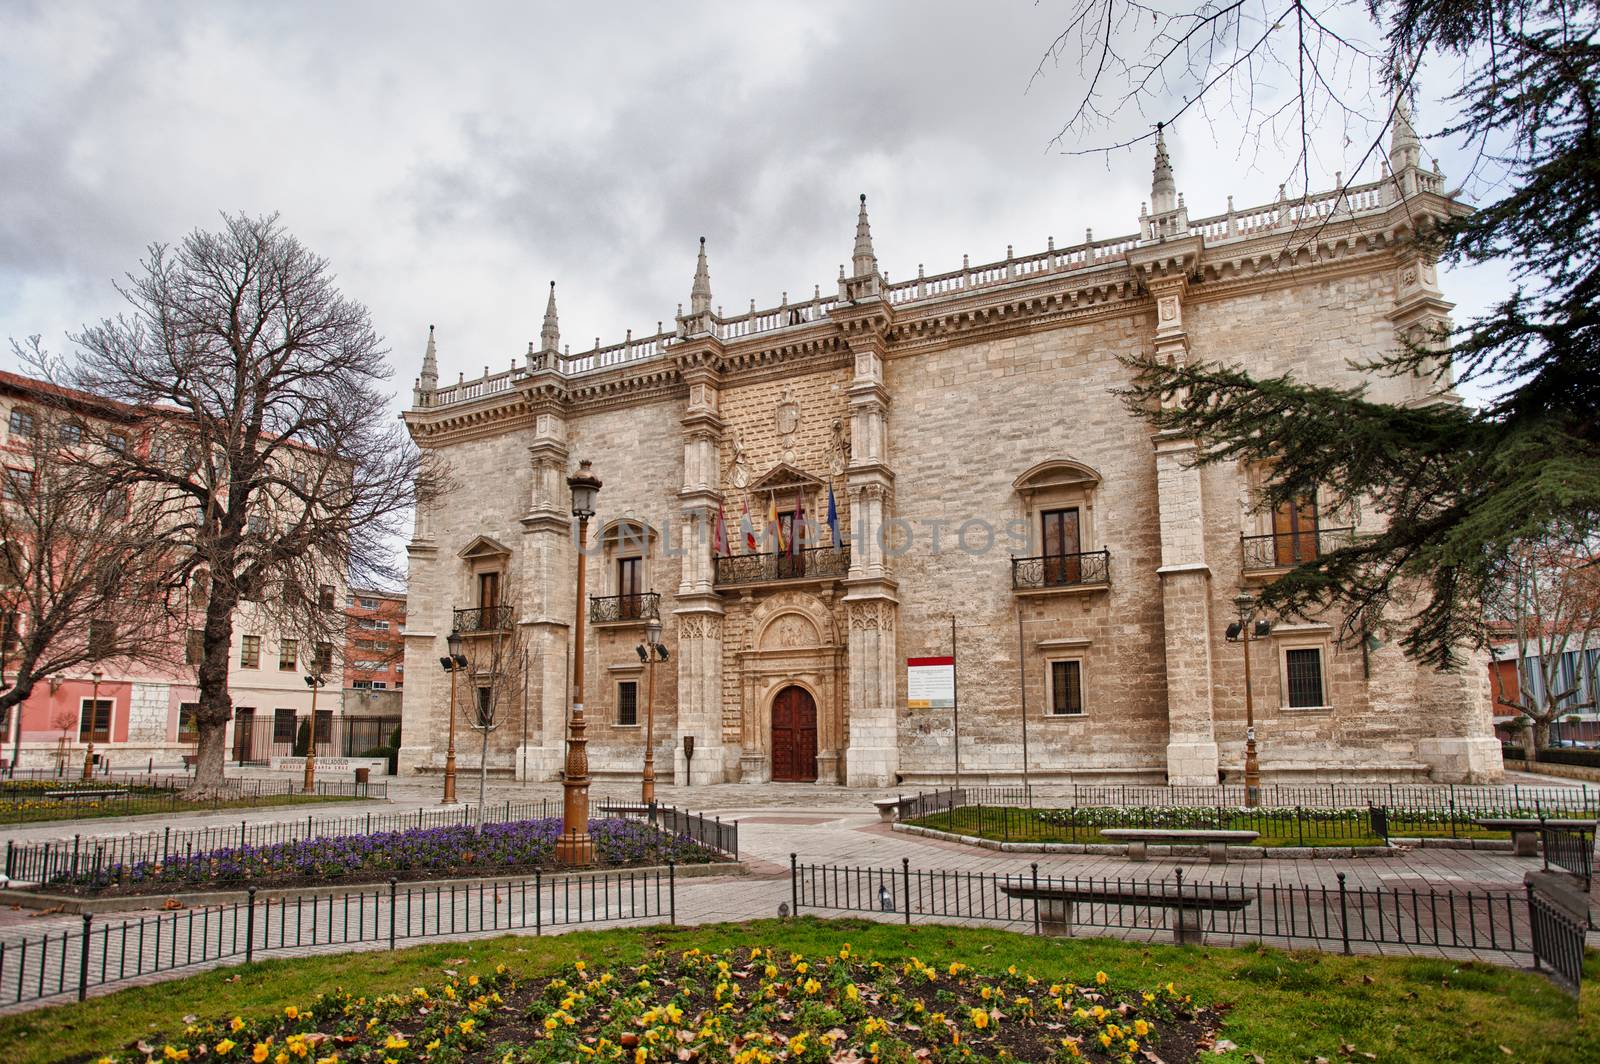 Palacio de Santa Cruz, Valladolid University, Spain.